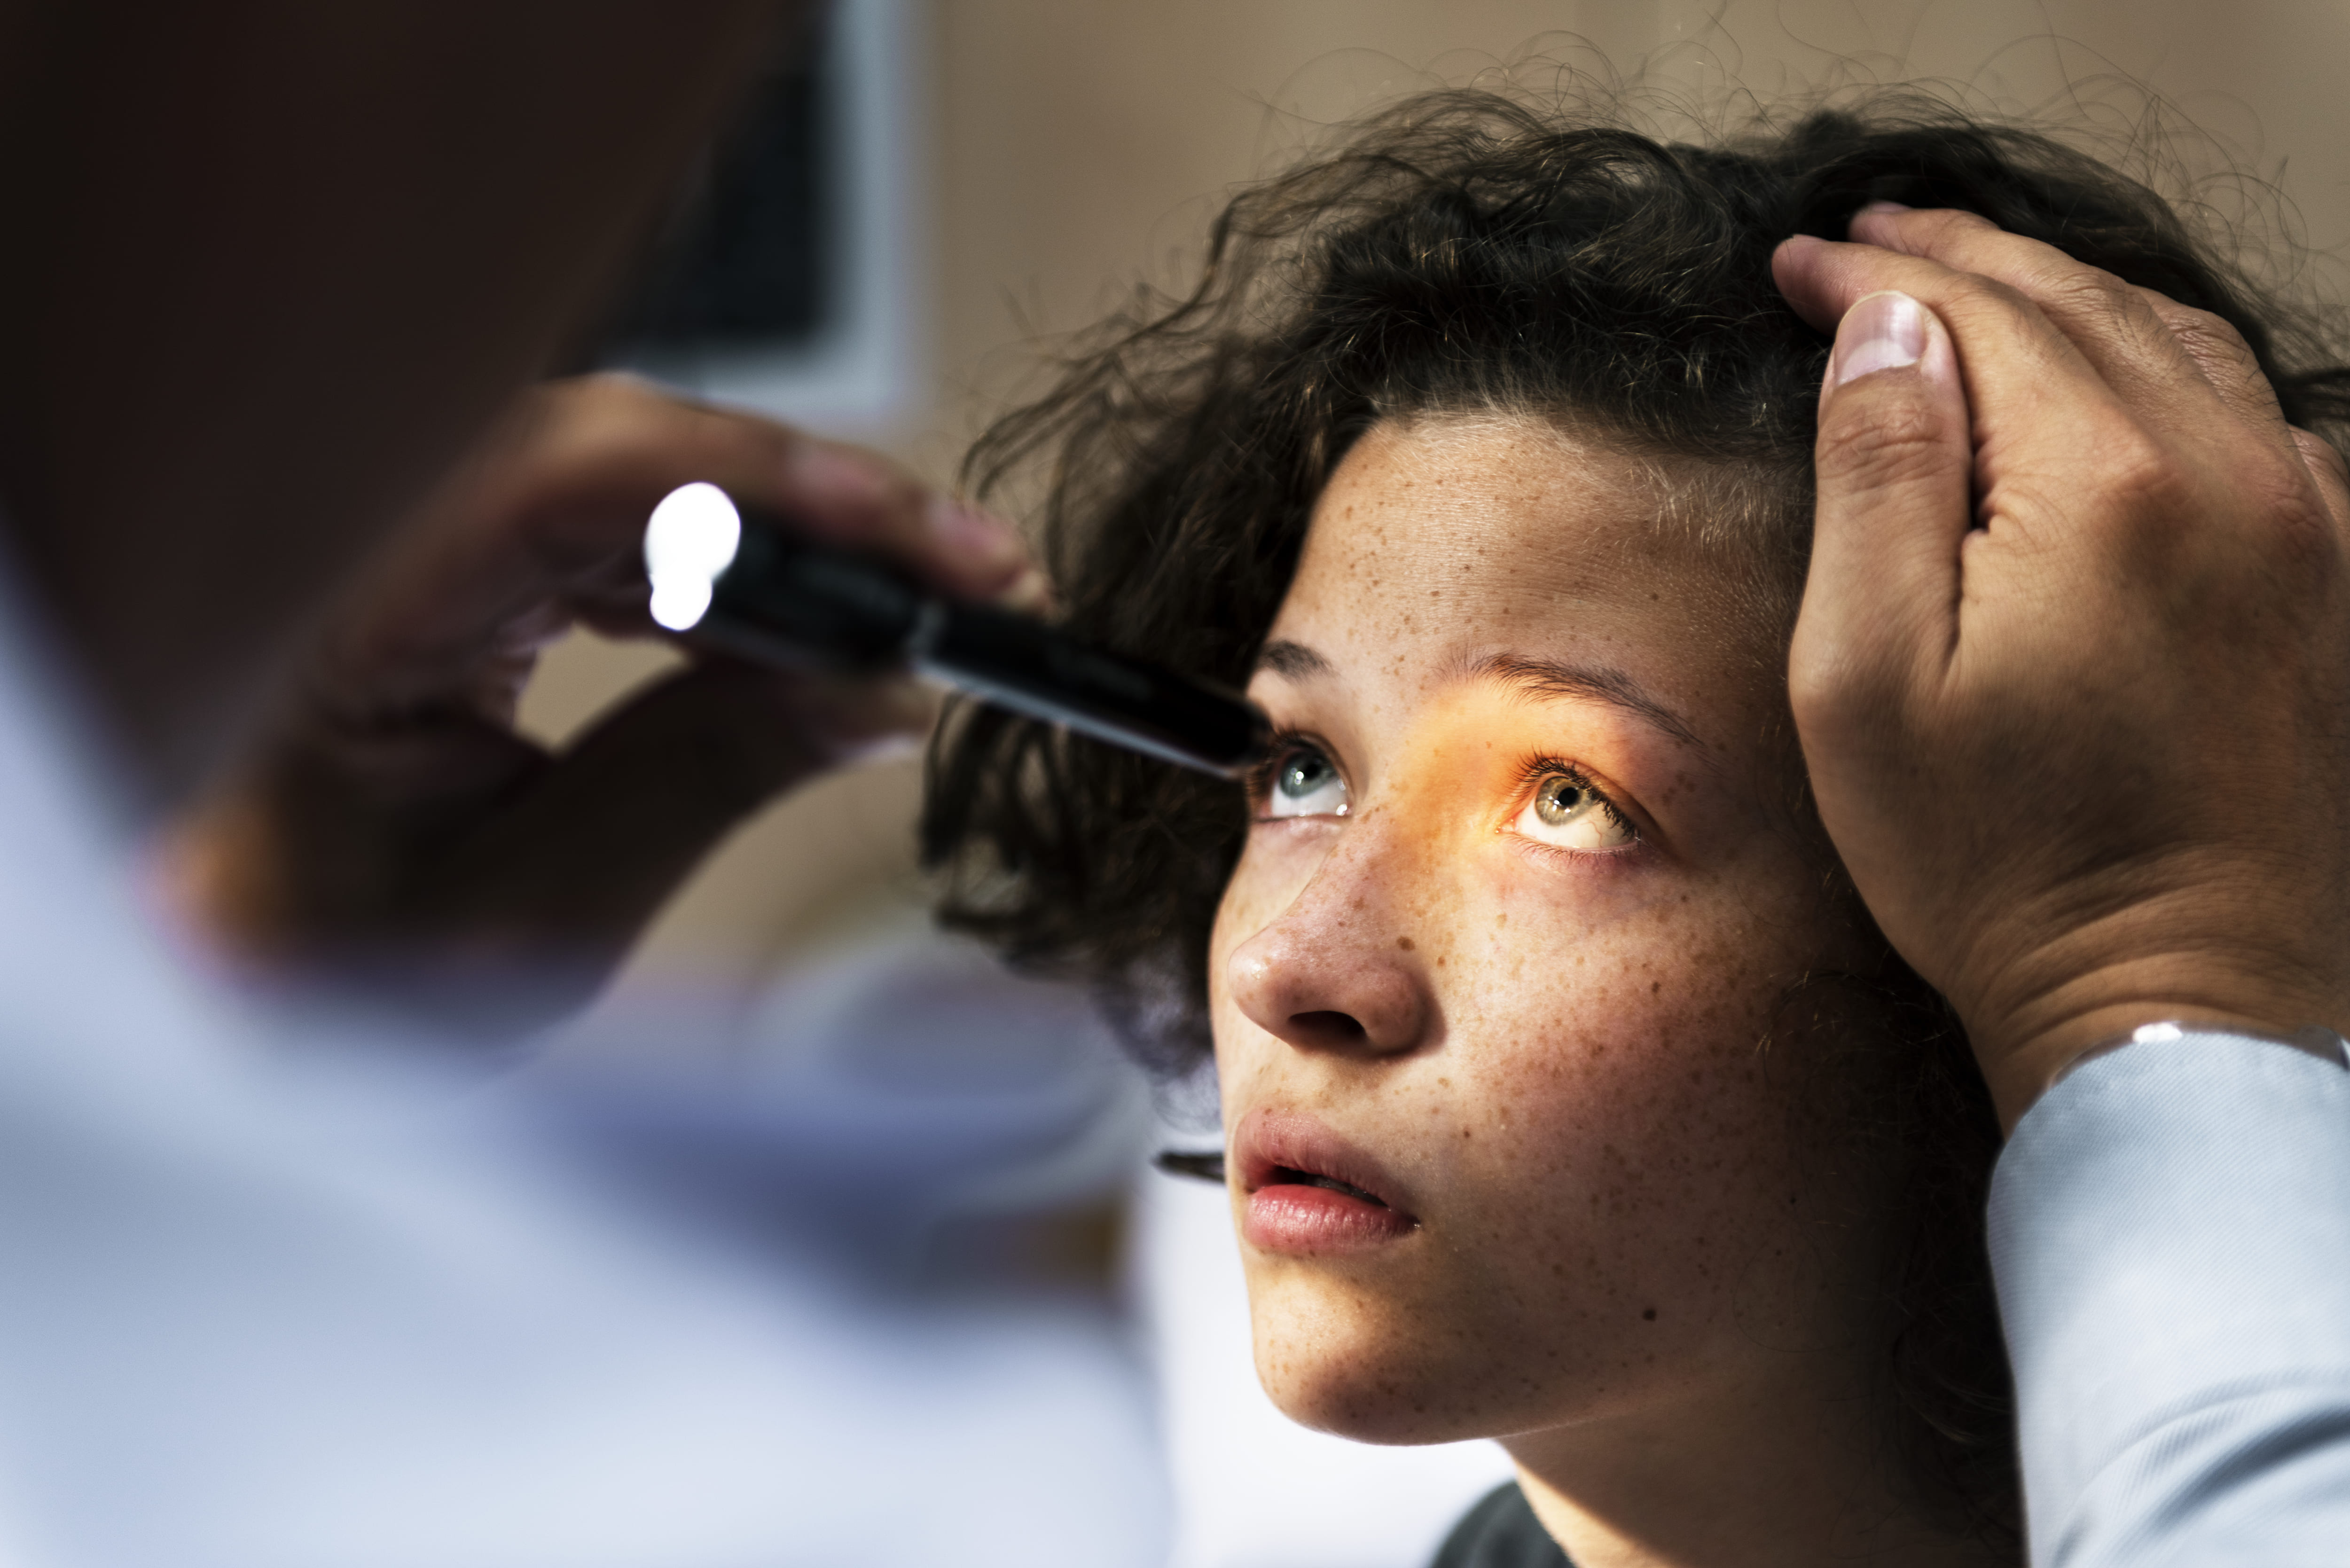 Exames oftalmológicos sem dilatar a pupila já é realidade